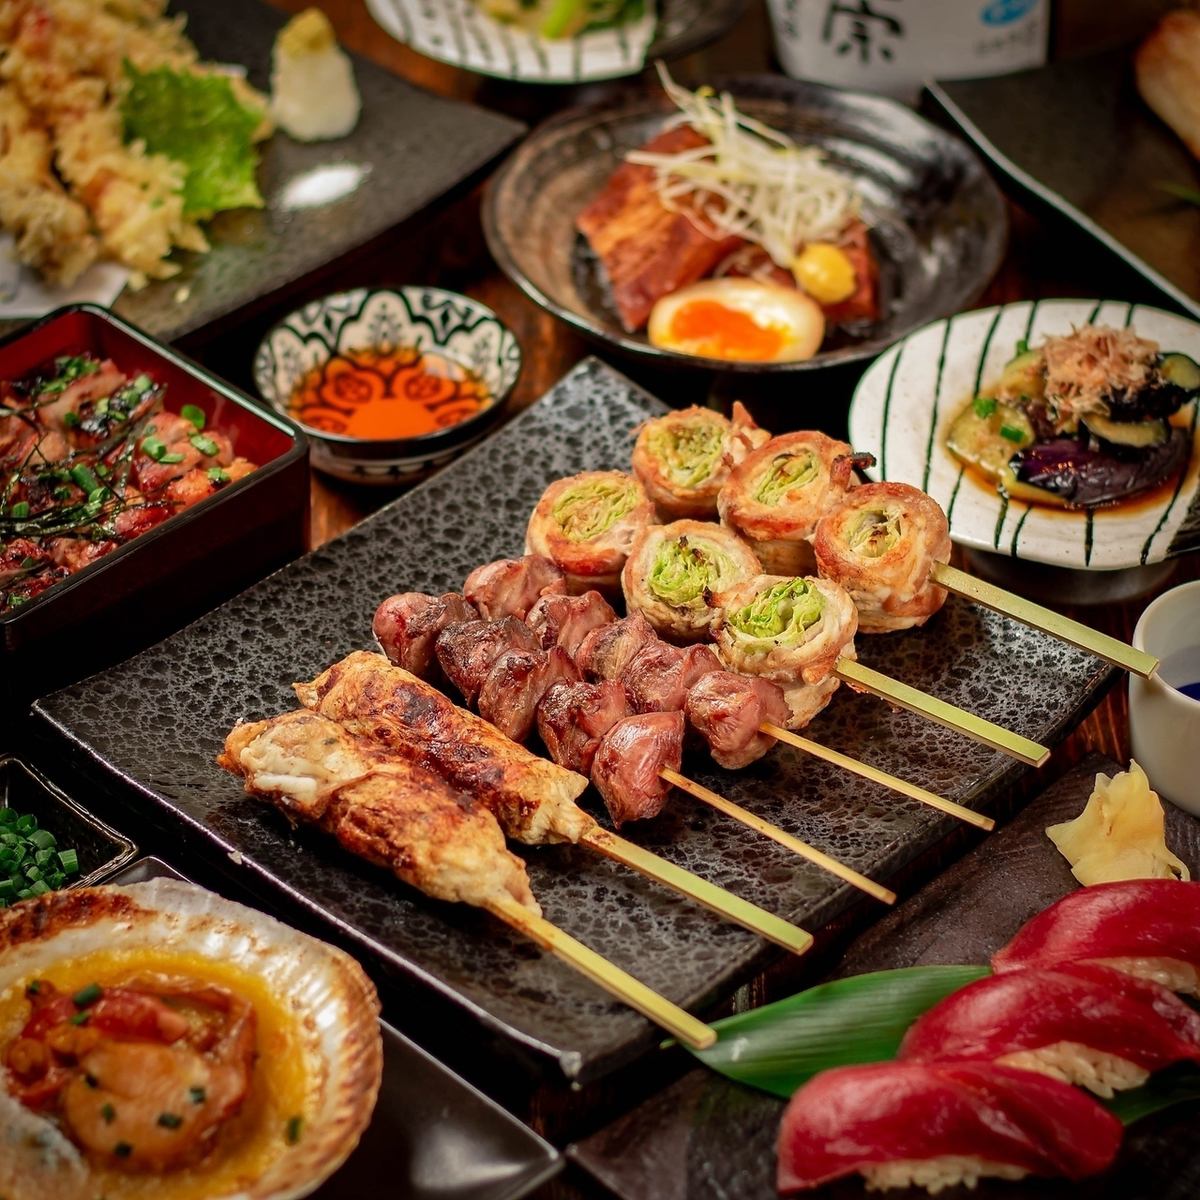 使用北海道食材烹調的高級日本料理。在完全私人的房間和櫃檯中放鬆和享受